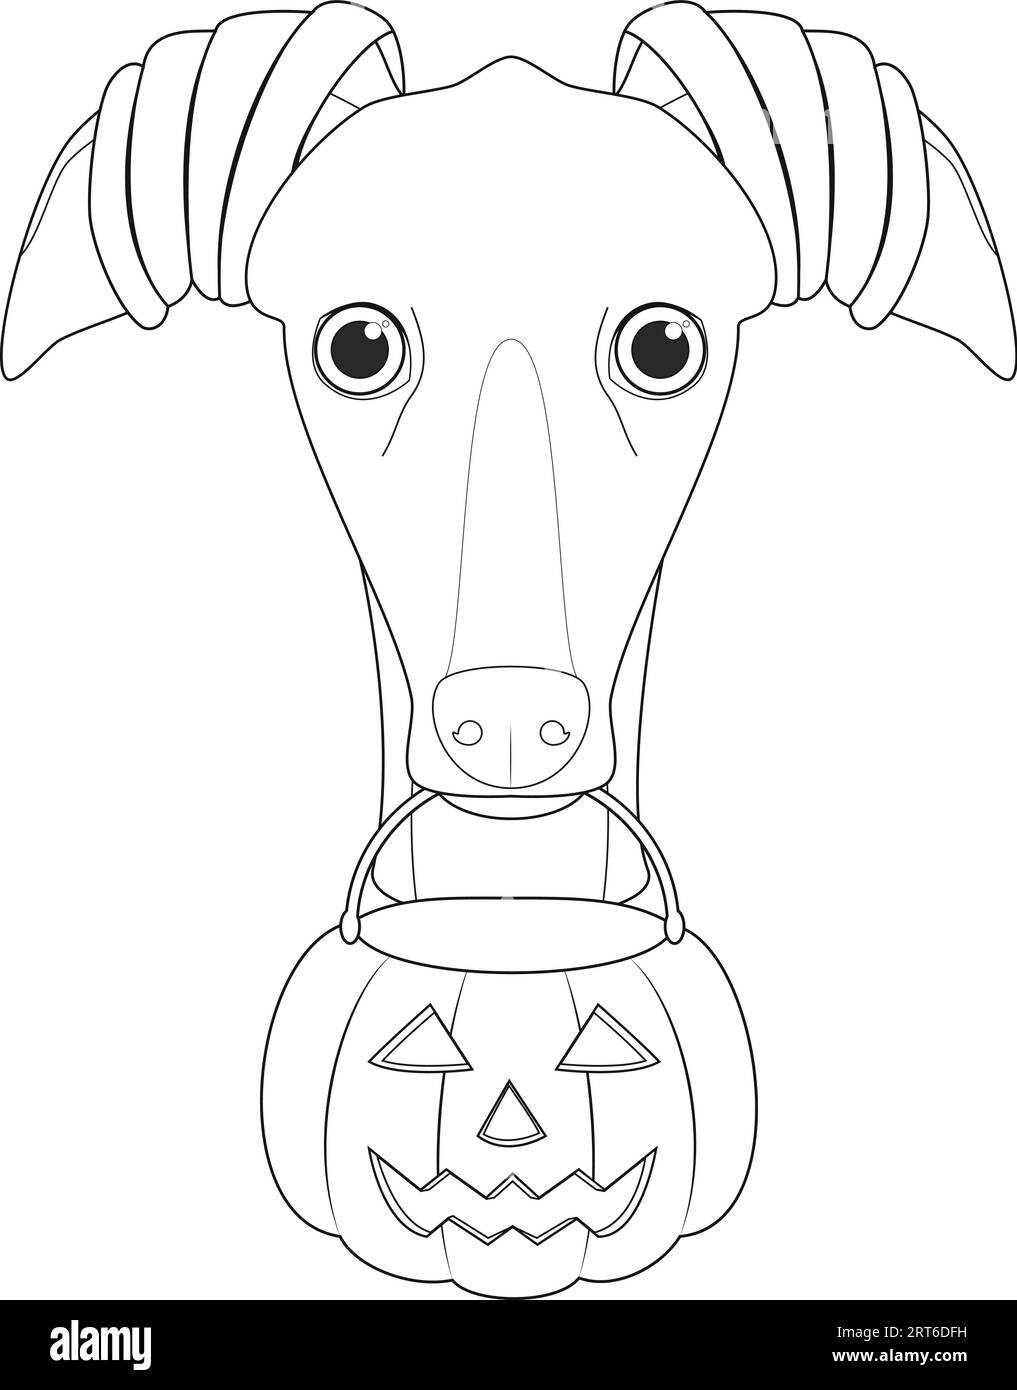 Halloween-Grußkarte zum Ausmalen. Windhund-Hund als Hexe gekleidet mit Kürbis im Mund Stock Vektor